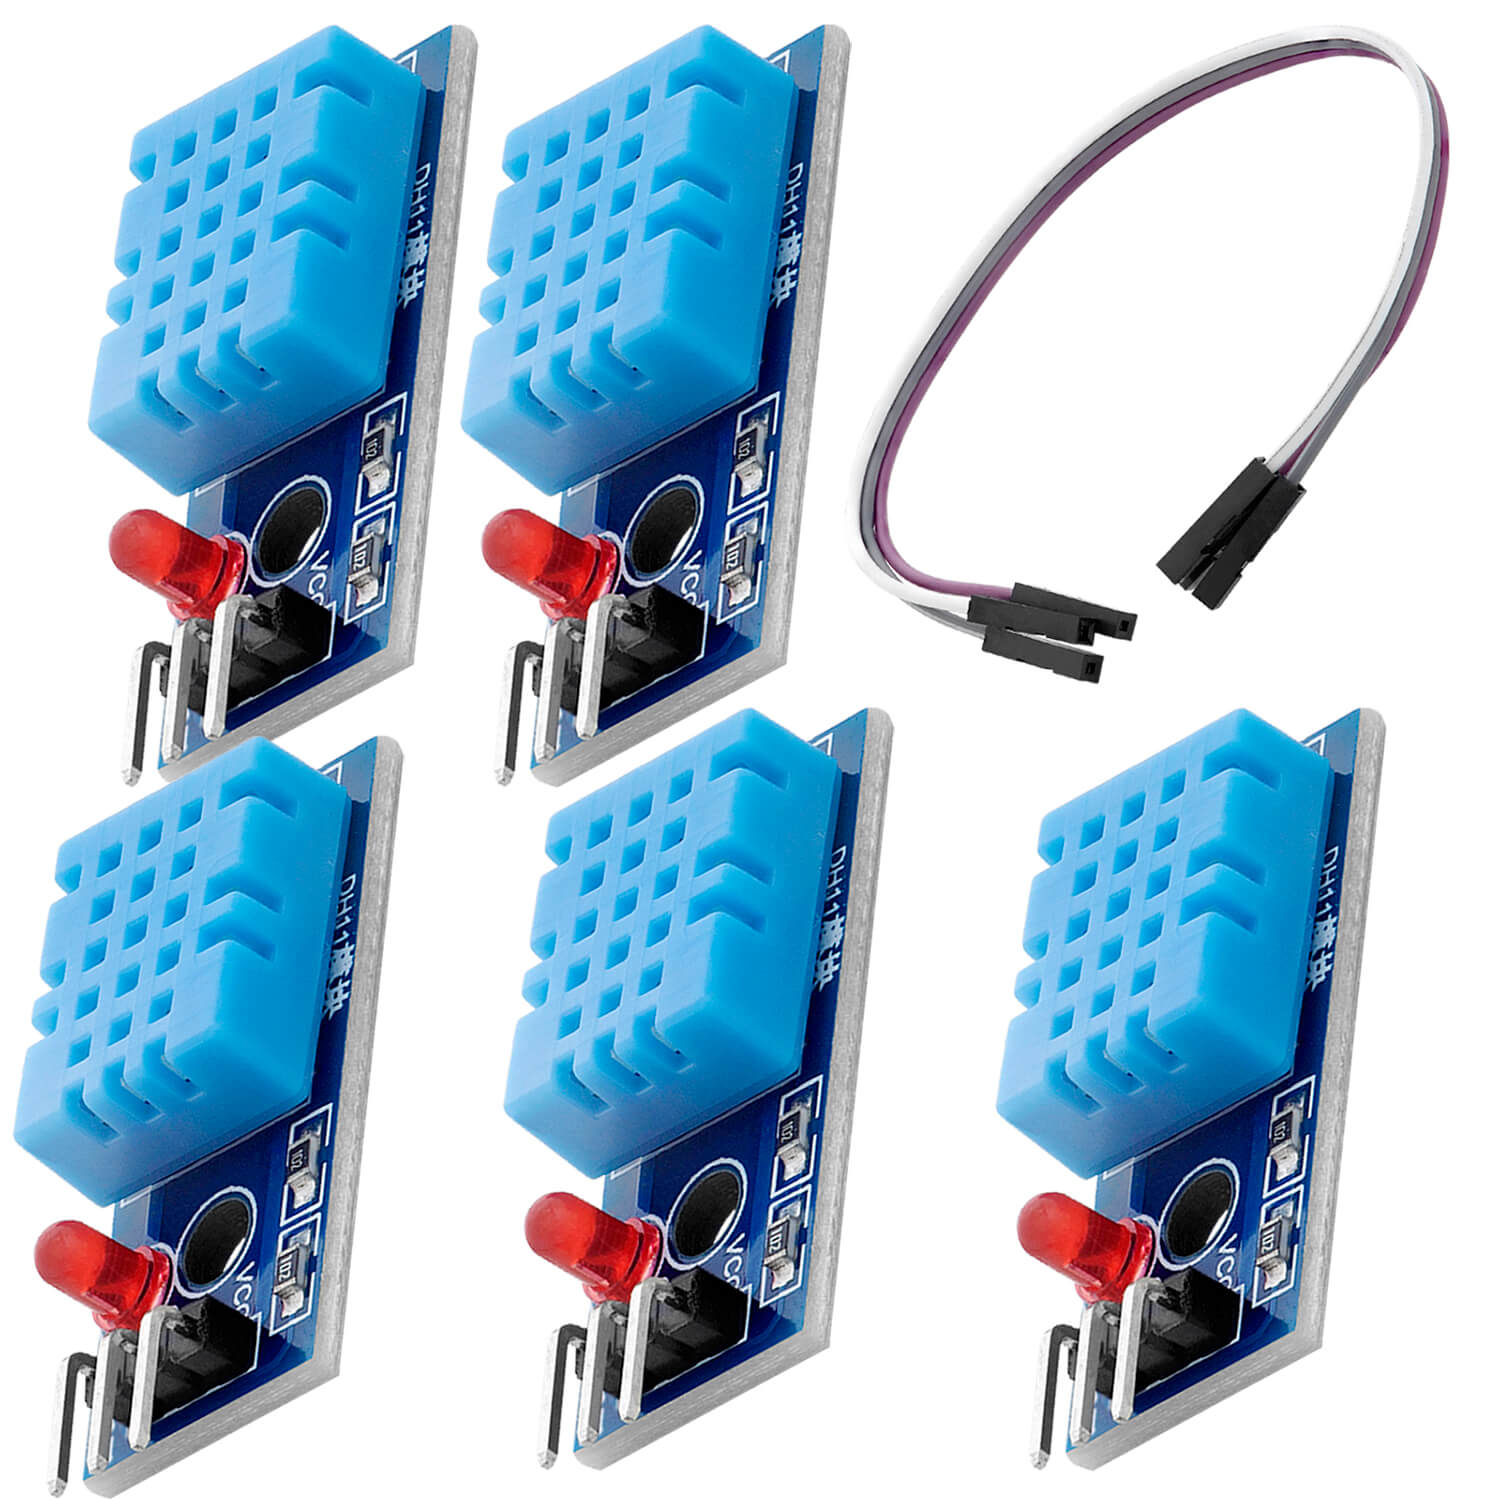 DHT11 Breakout Modul mit Platine und Kabel Temperatursensor und Luftfeuchtigkeitssensor kompatibel mit Arduino und Raspberry Pi - AZ-Delivery